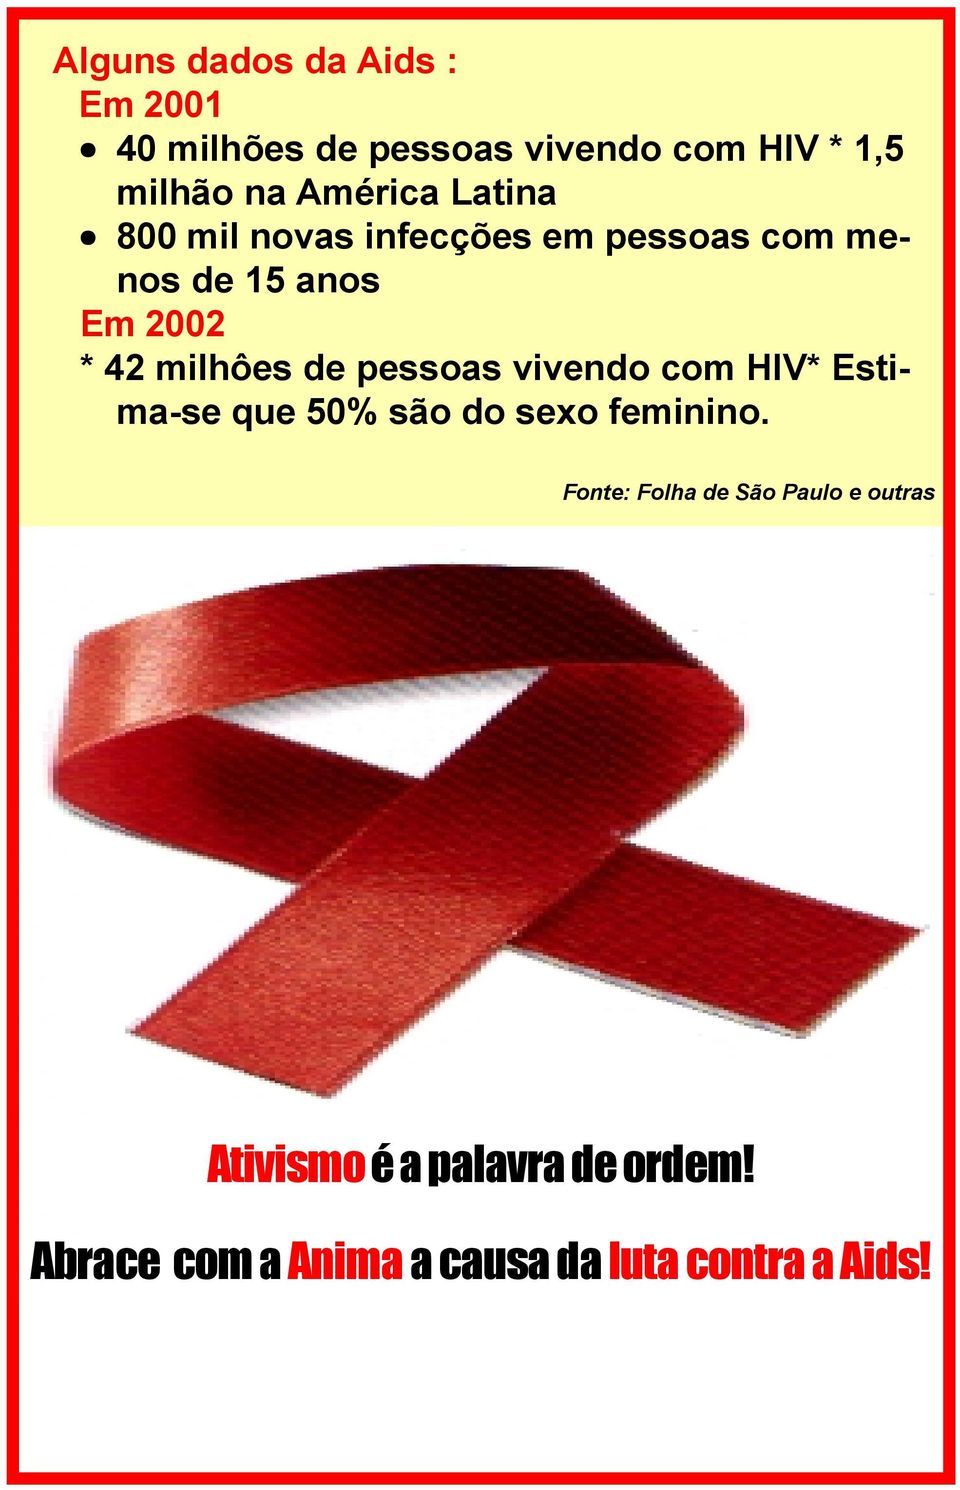 milhôes de pessoas vivendo com HIV* Estima-se que 50% são do sexo feminino.